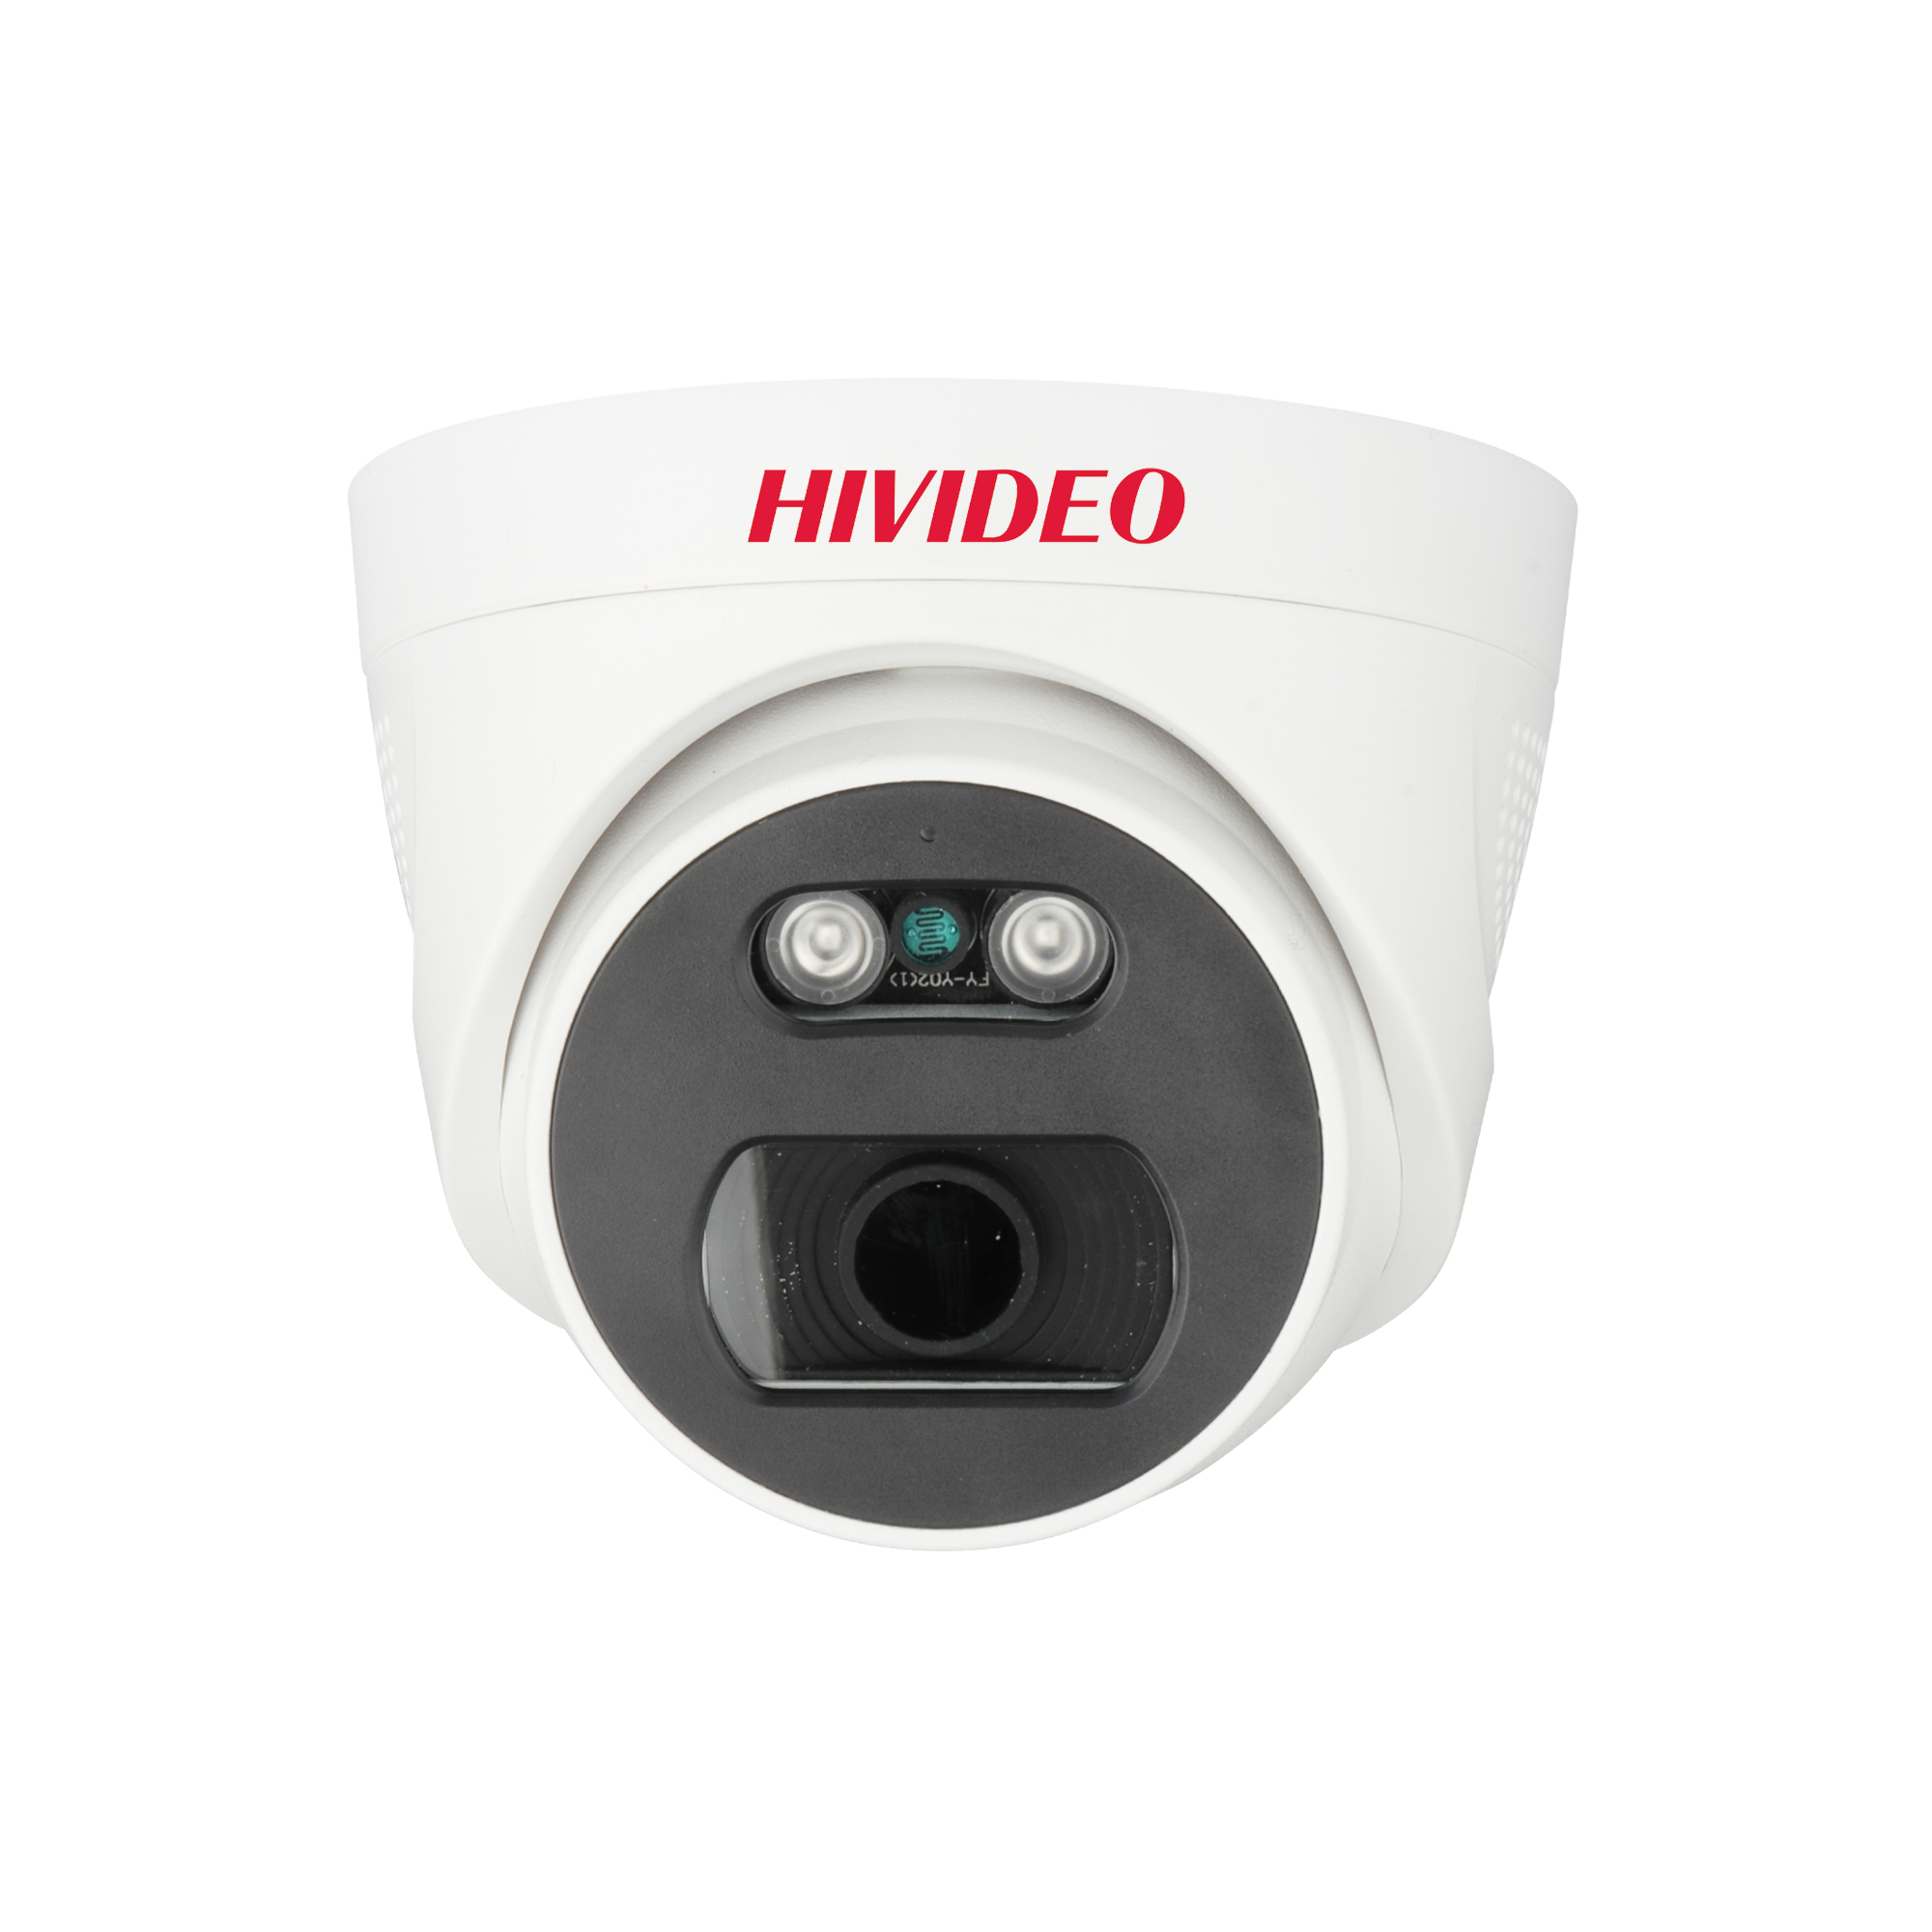 دوربین دام HIVIDEO مدل HI-D73614